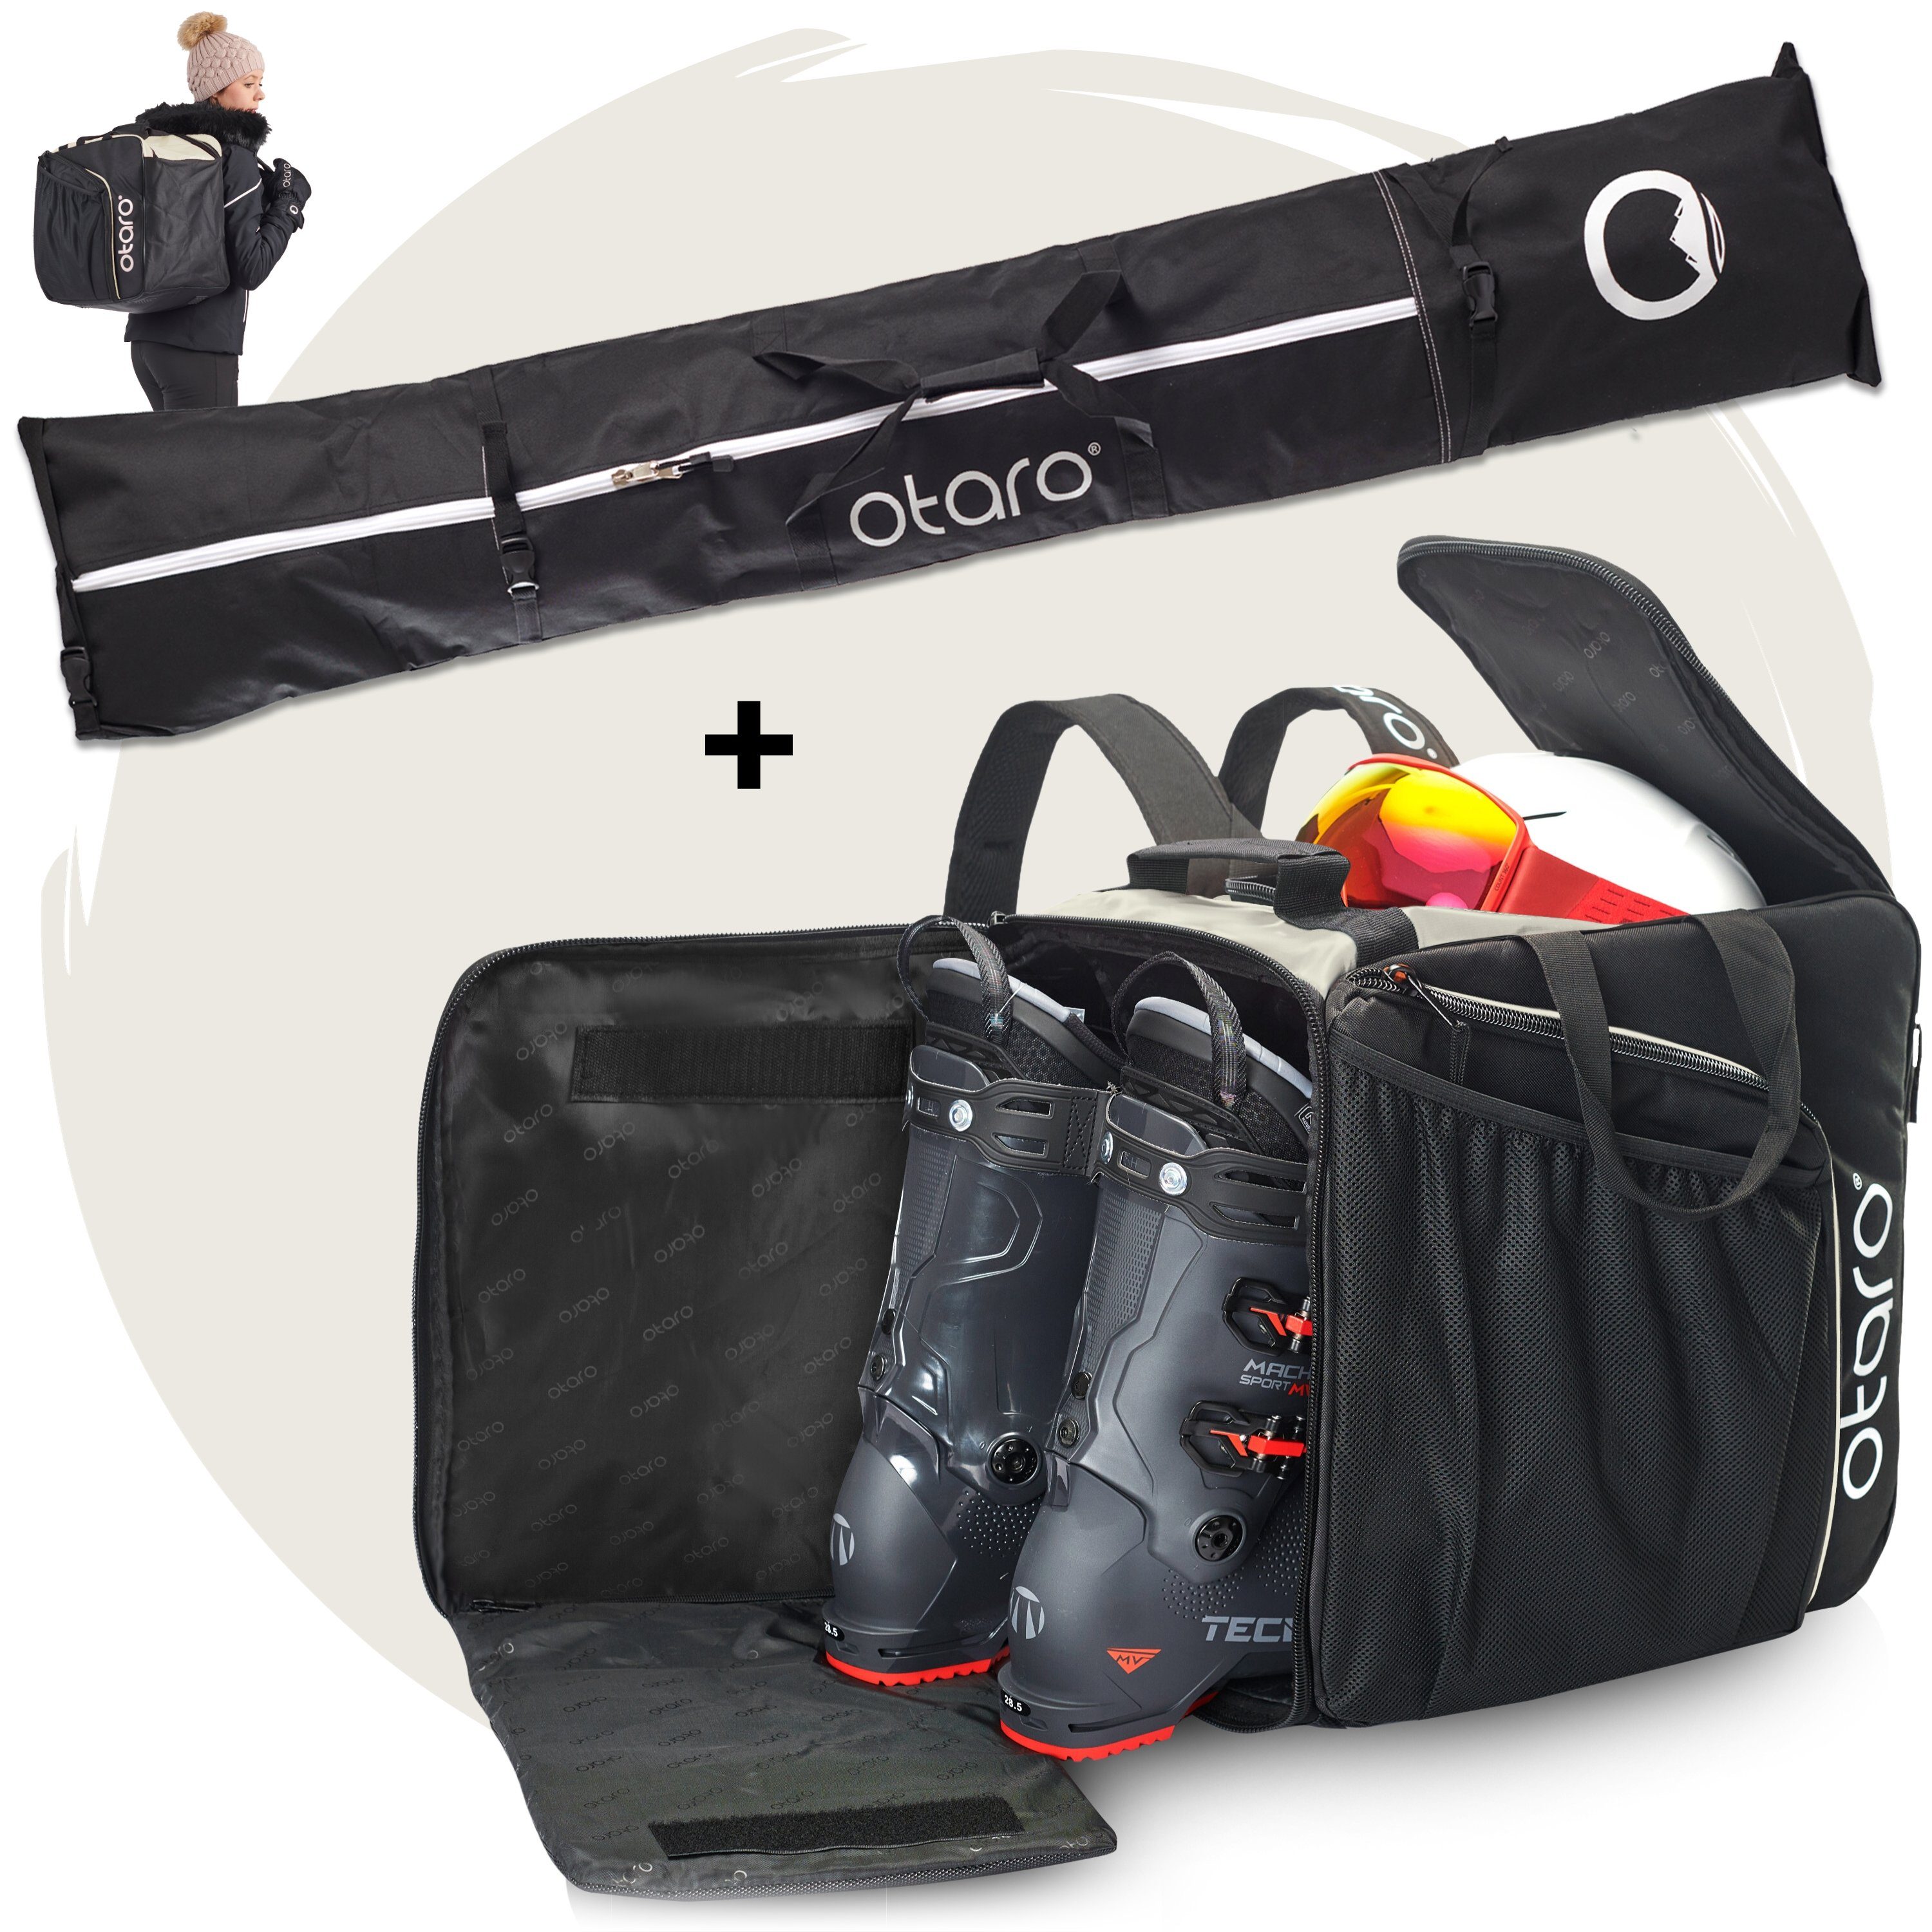 Otaro Skitasche Set: Skischuhtasche mit Schuhfach & Skitasche, Pro-Set für 2 Paar Ski (Schutz für deine Ausrüstung, Perfekt durchdacht, ausklappbare Standfläche, für 2 Paar Ski + Stöcke) Schwarz Frostweiß